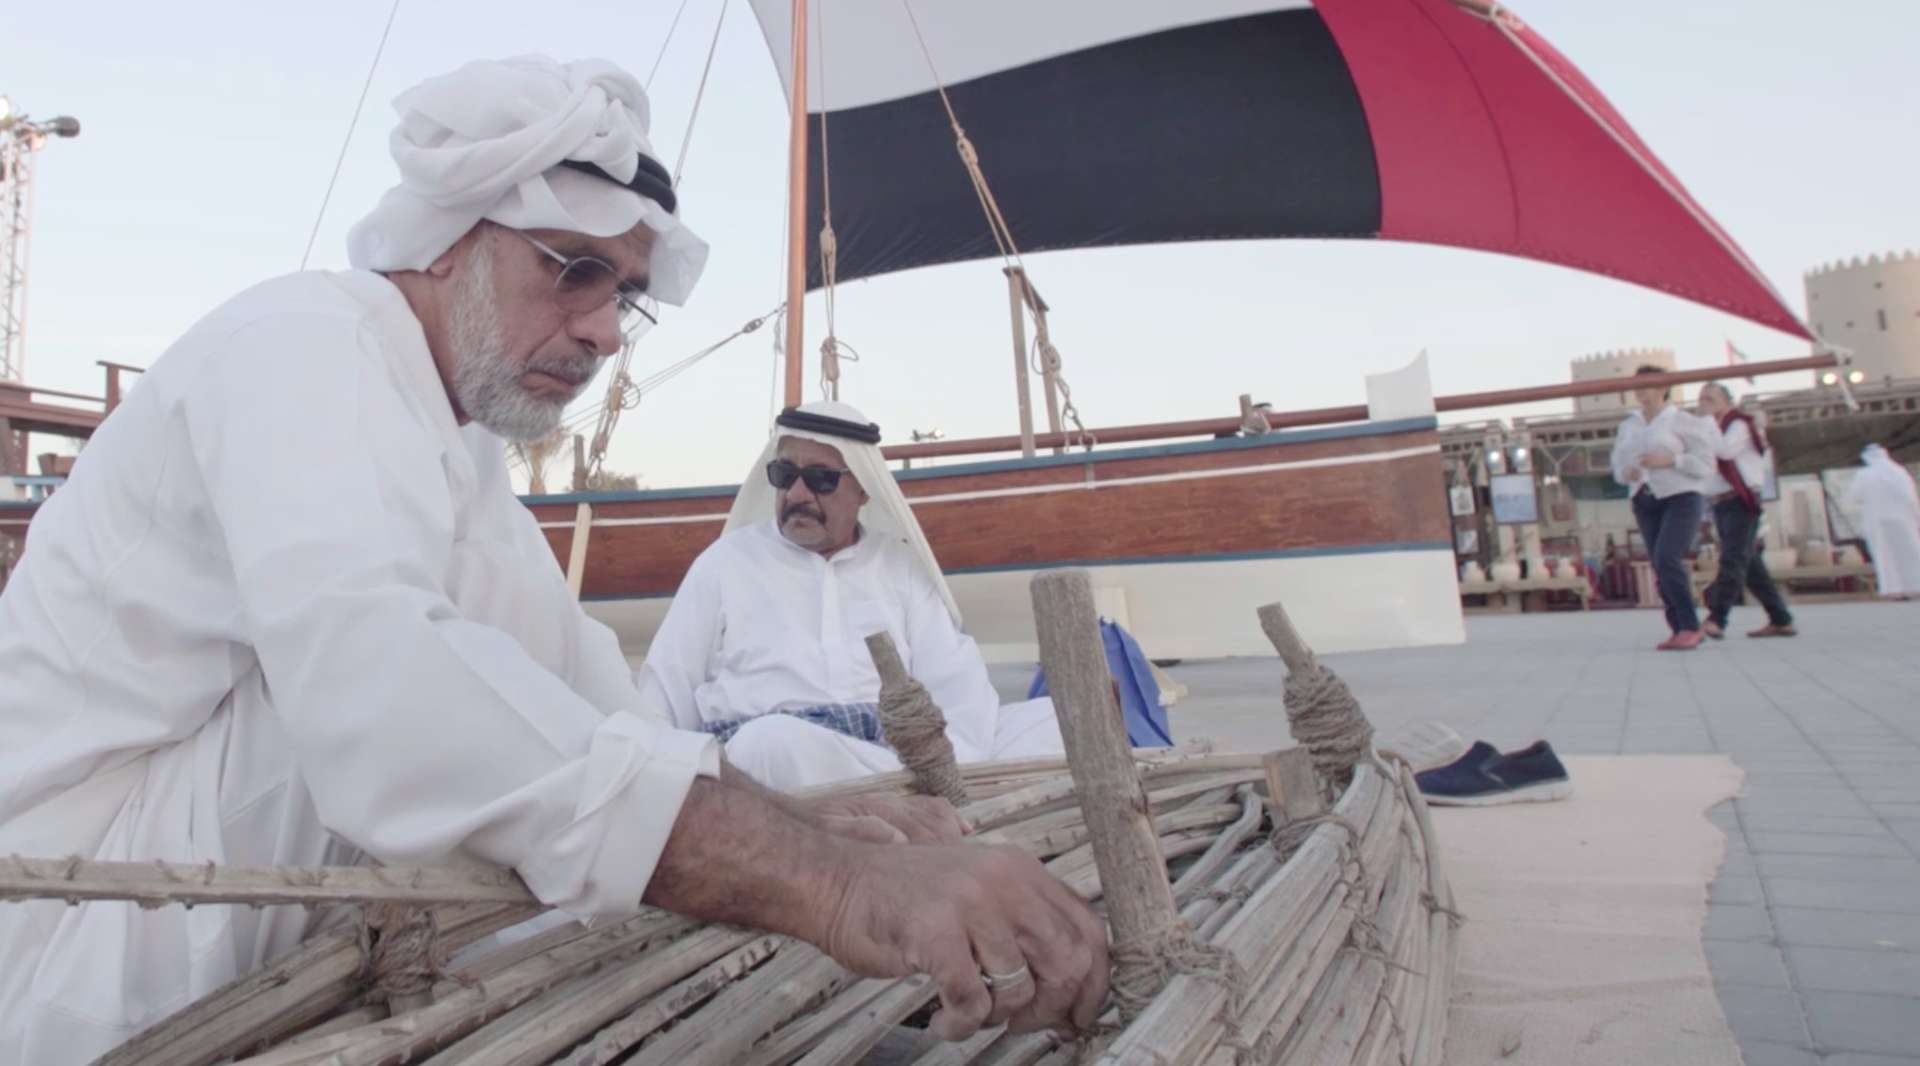 第九届阿联酋谢赫扎耶德非物质文化遗产节现场纪实-微观影视摄制